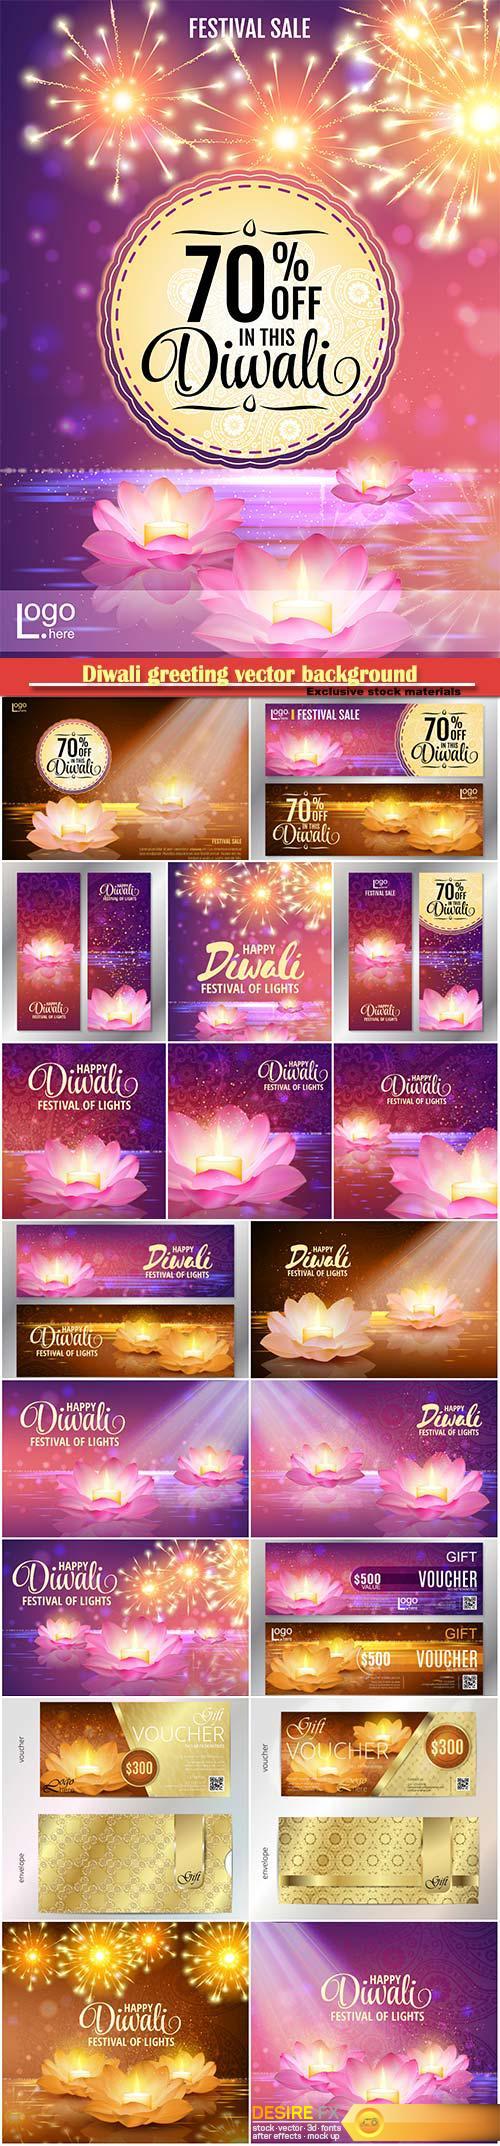 Diwali greeting vector background, lotus oil lamp